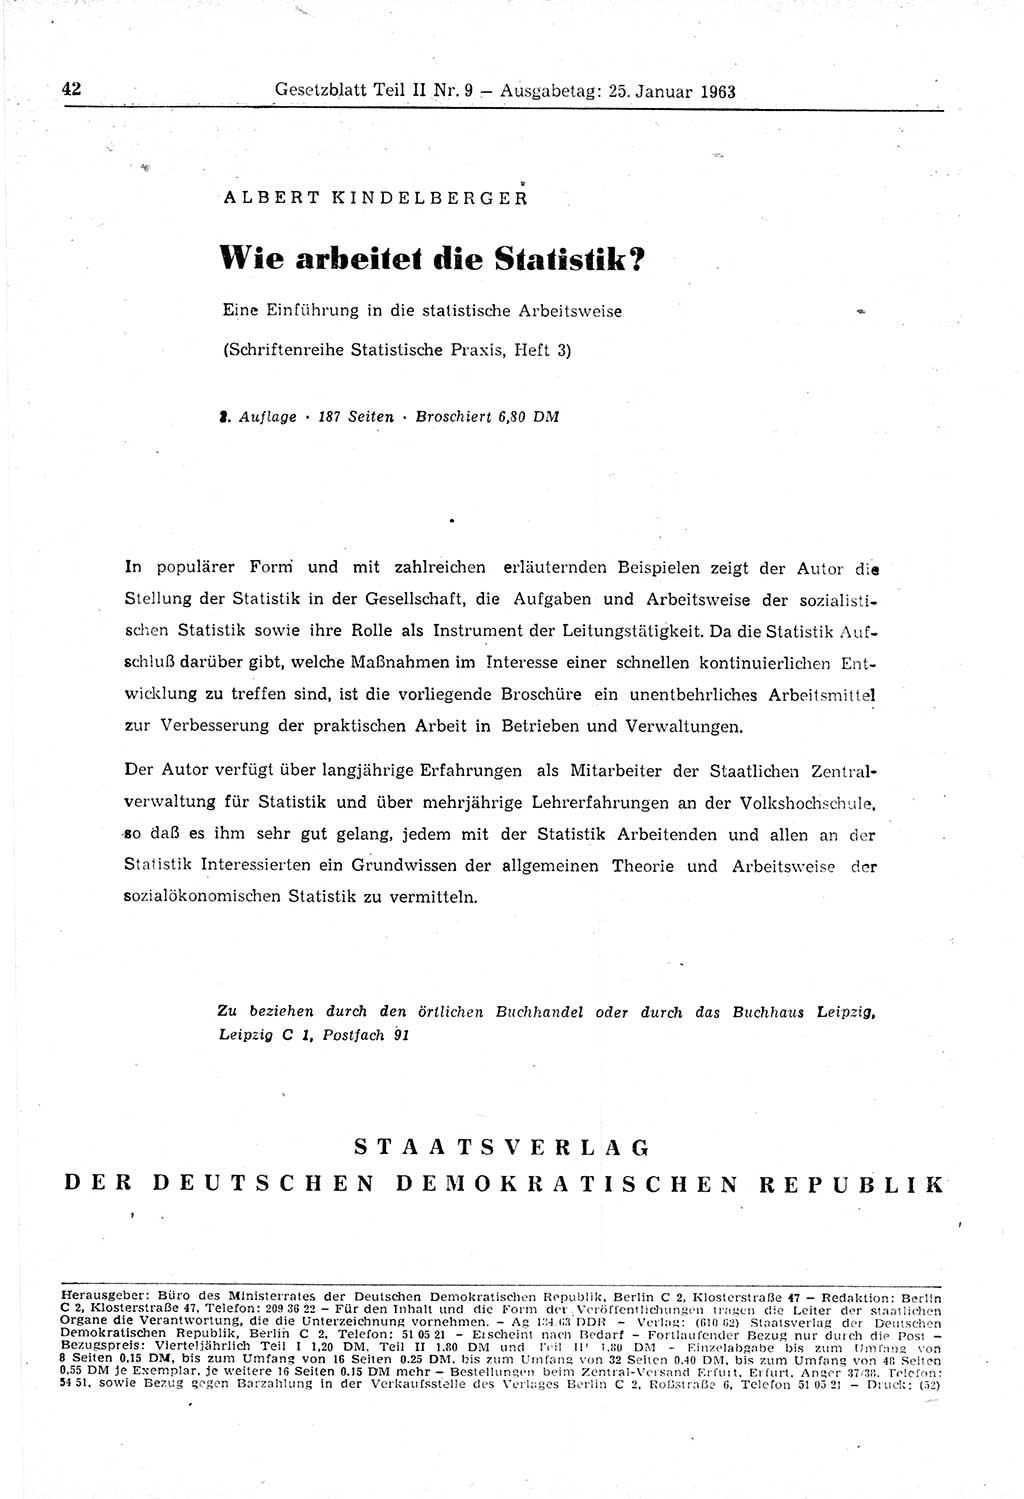 Gesetzblatt (GBl.) der Deutschen Demokratischen Republik (DDR) Teil ⅠⅠ 1963, Seite 42 (GBl. DDR ⅠⅠ 1963, S. 42)